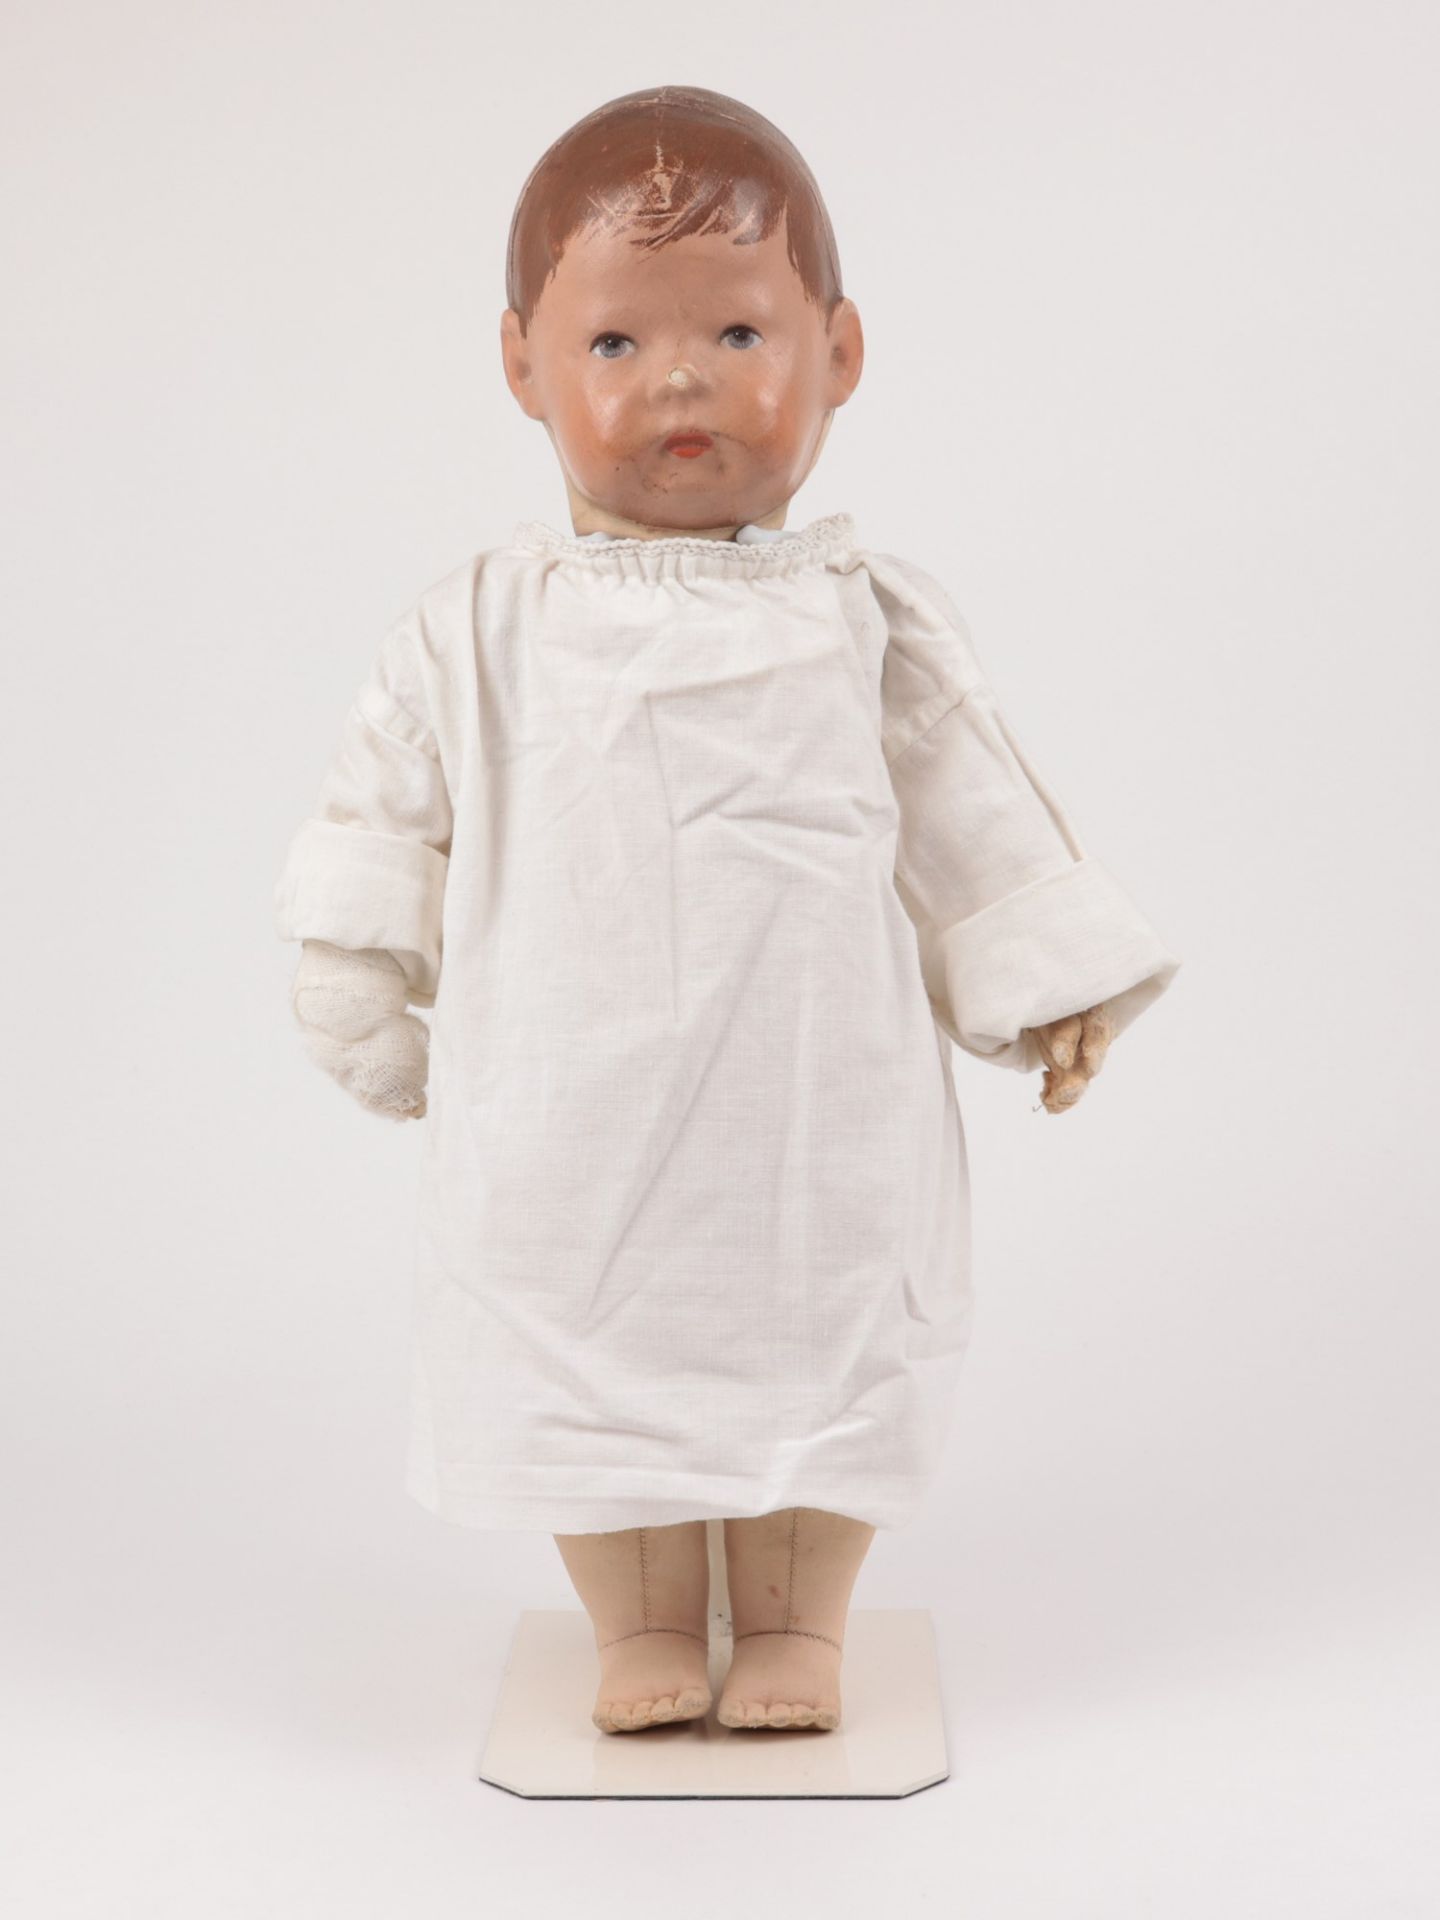 Käthe Kruse - Puppe um 1910/20, Puppe I, fest angenähter Nesselkopf mit drei Hinterkopfnähten u. - Bild 4 aus 17